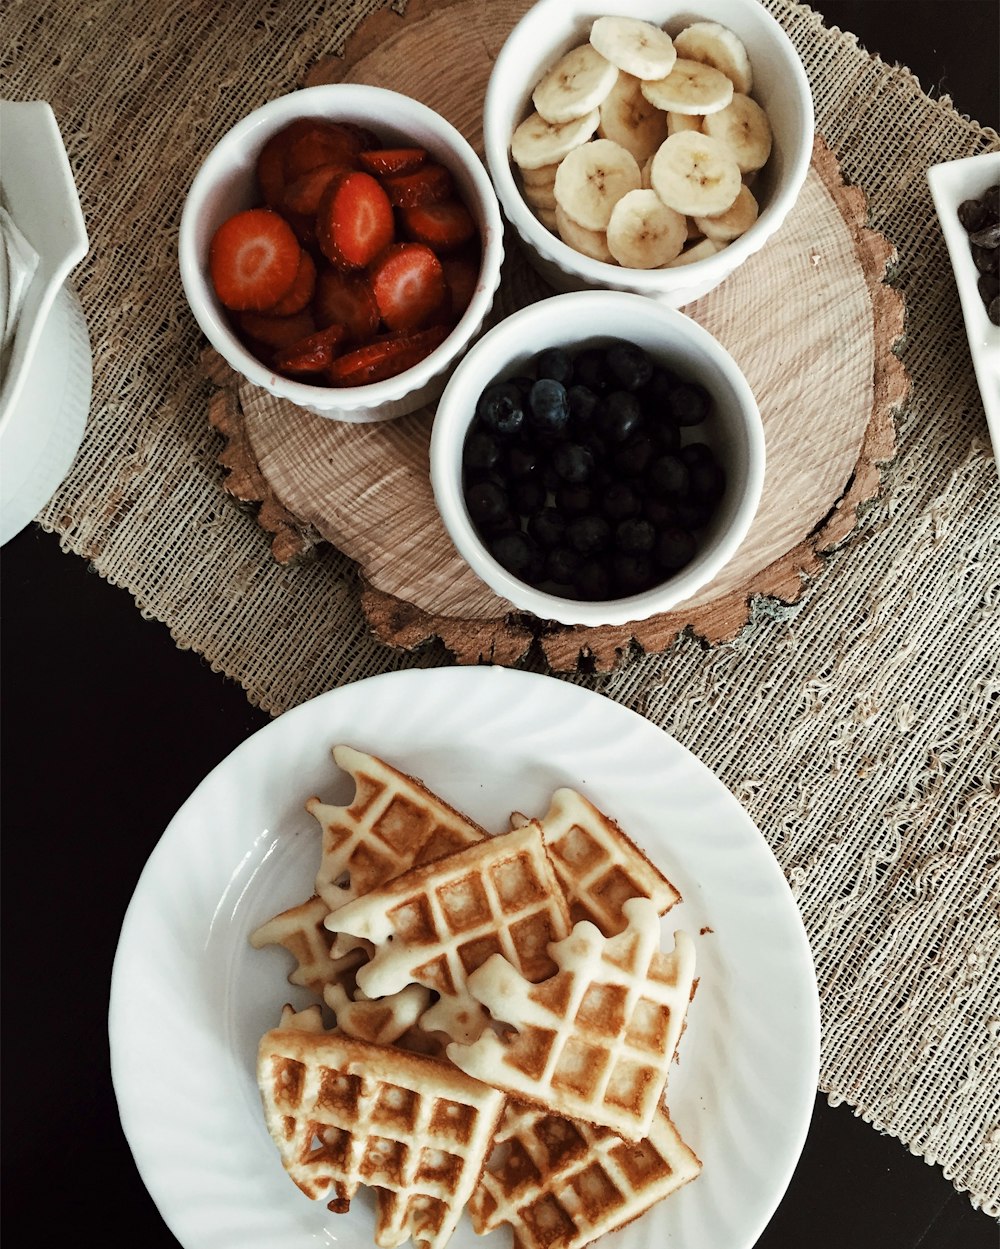 foto de waffles ao lado de tigelas de morangos, banana e bagas pretas